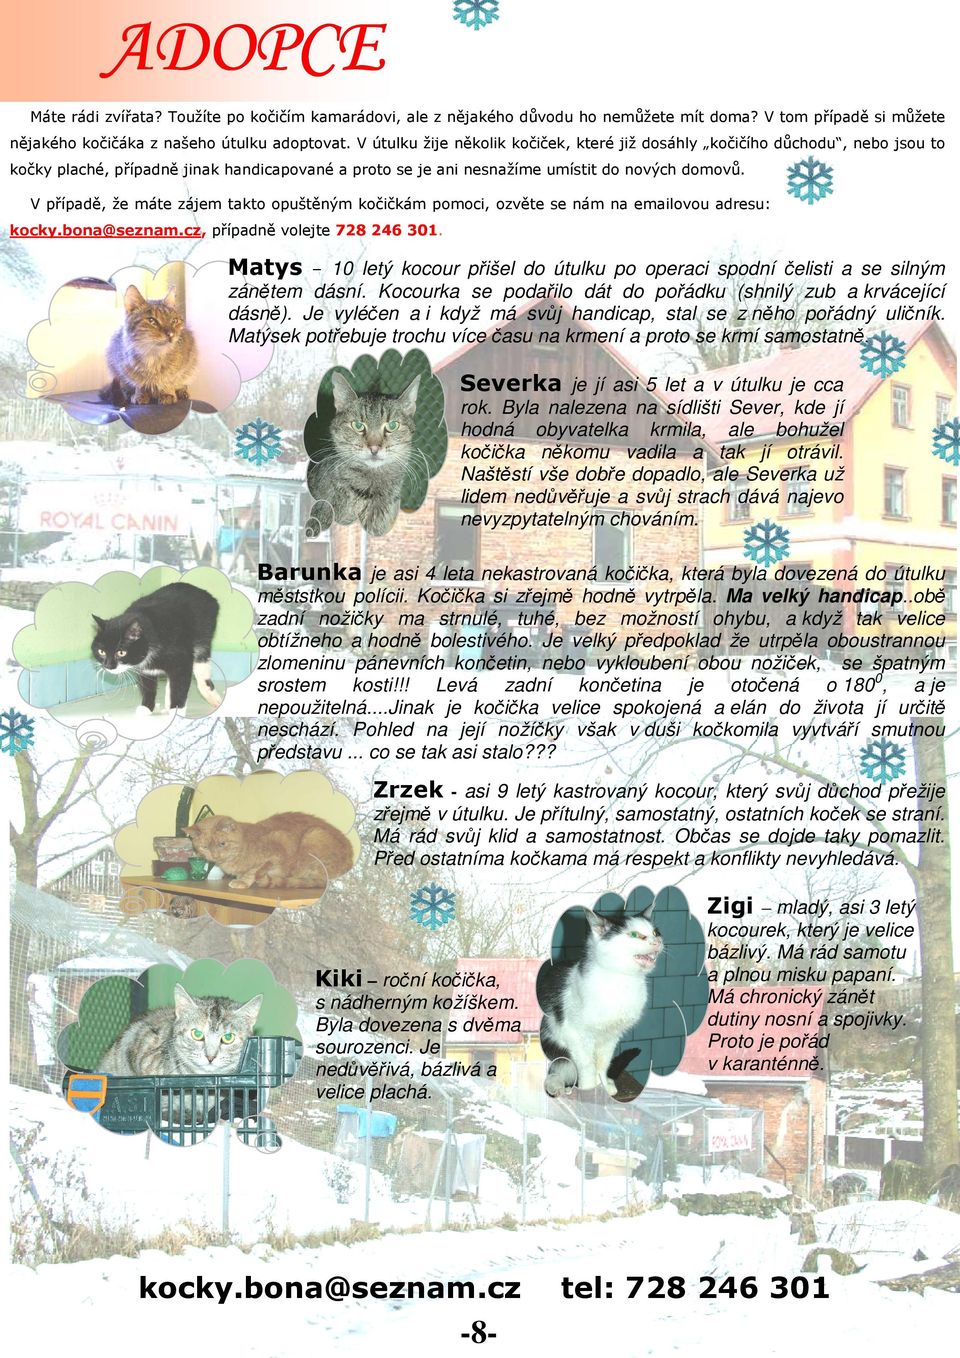 V případě, že máte zájem takto opuštěným kočičkám pomoci, ozvěte se nám na emailovou adresu: kocky.bona@seznam.cz, případně volejte 728 246 301.